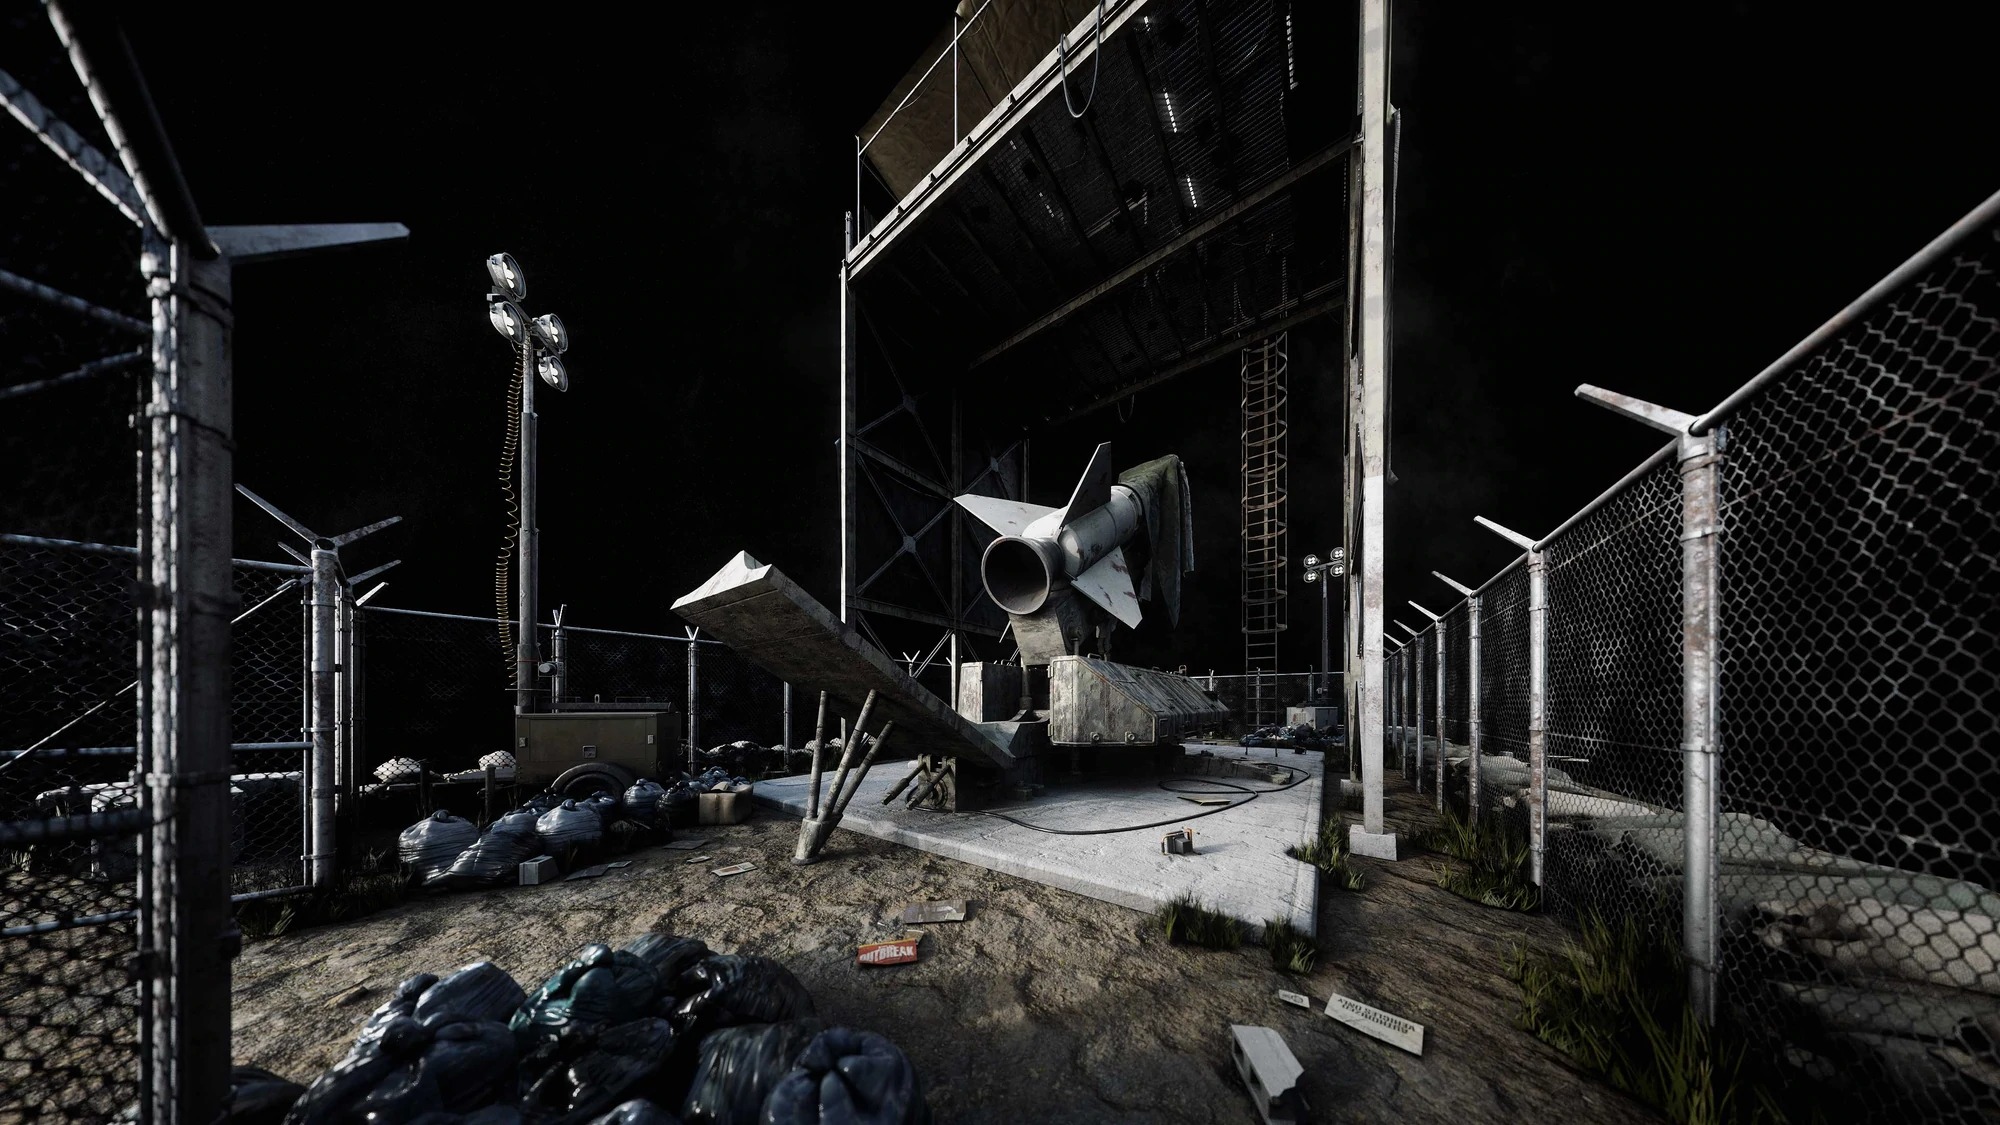 废墟模型补给站模型非军事隔离区3D模型合集Kitbash3D -DMZ